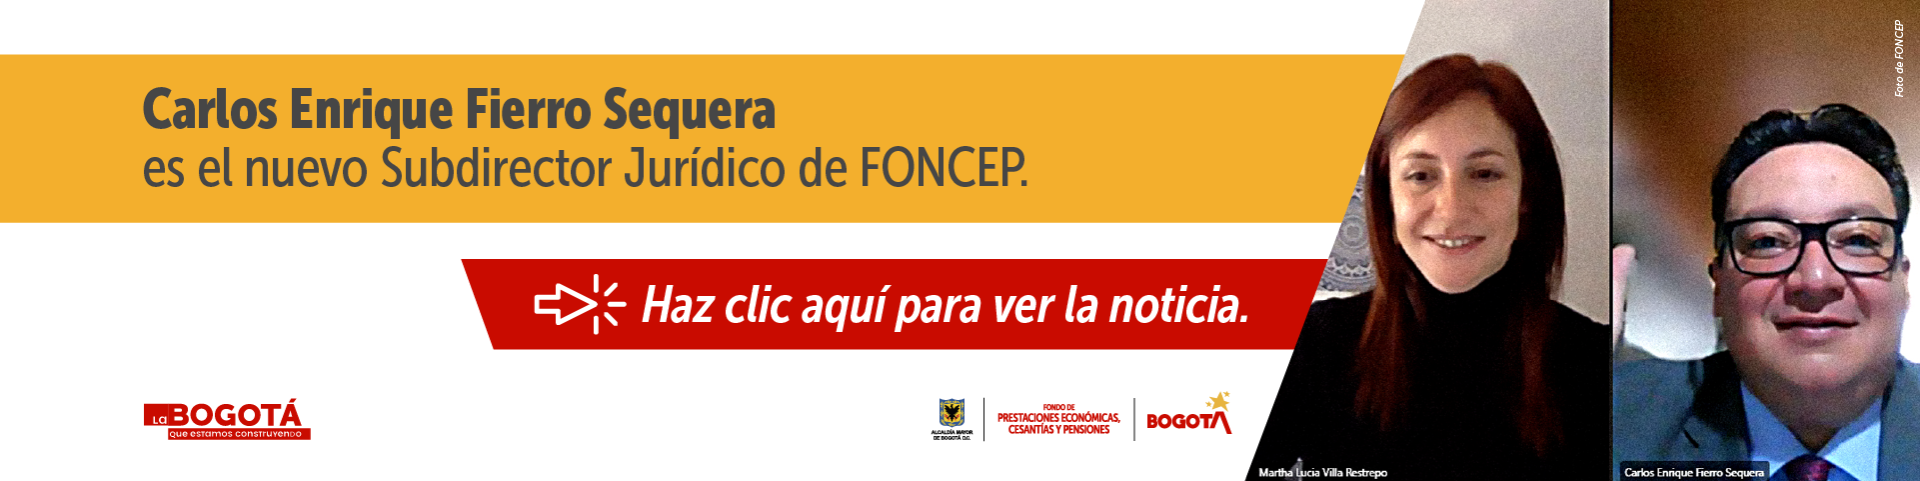 Carlos Enrique Fierro Sequera es el nuevo Subdirector Jurídico de FONCEP. - Haz clic aquí para ver la noticia.